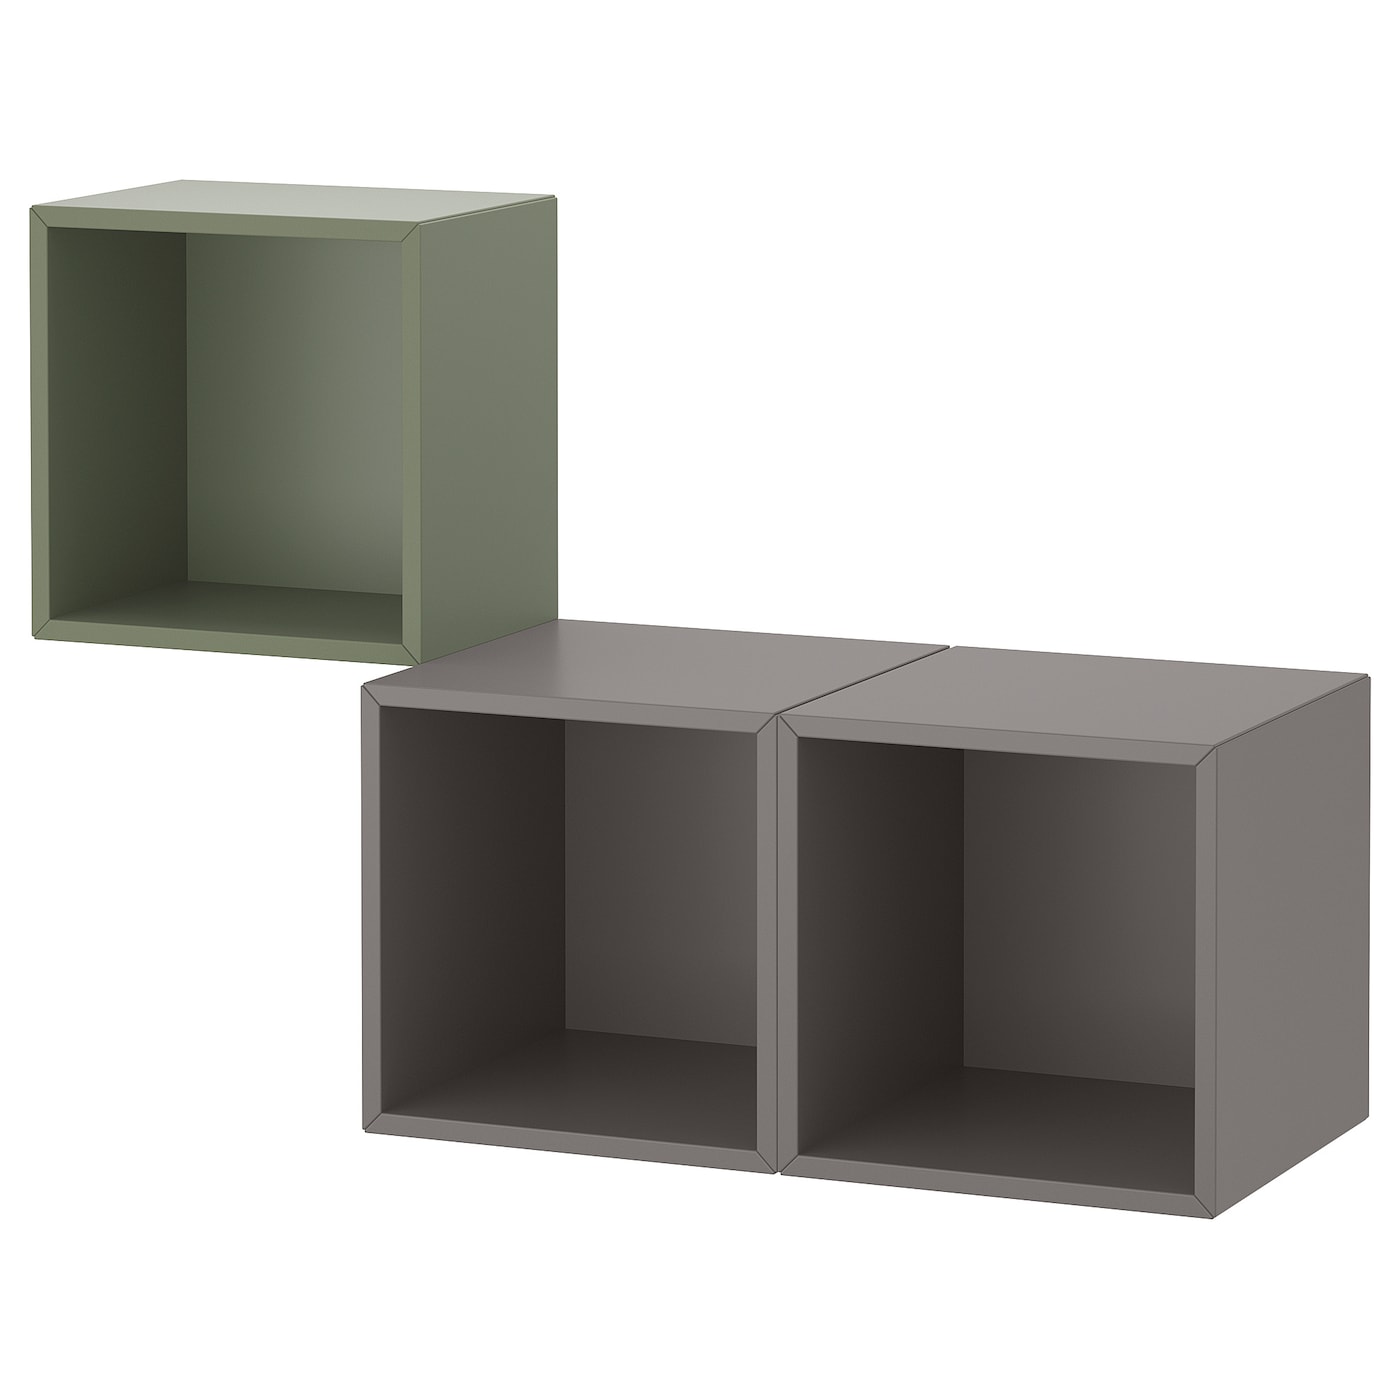 Комбинация для хранения - EKET IKEA/ ЭКЕТ ИКЕА,  105х70 см, темно-серый  /зеленый